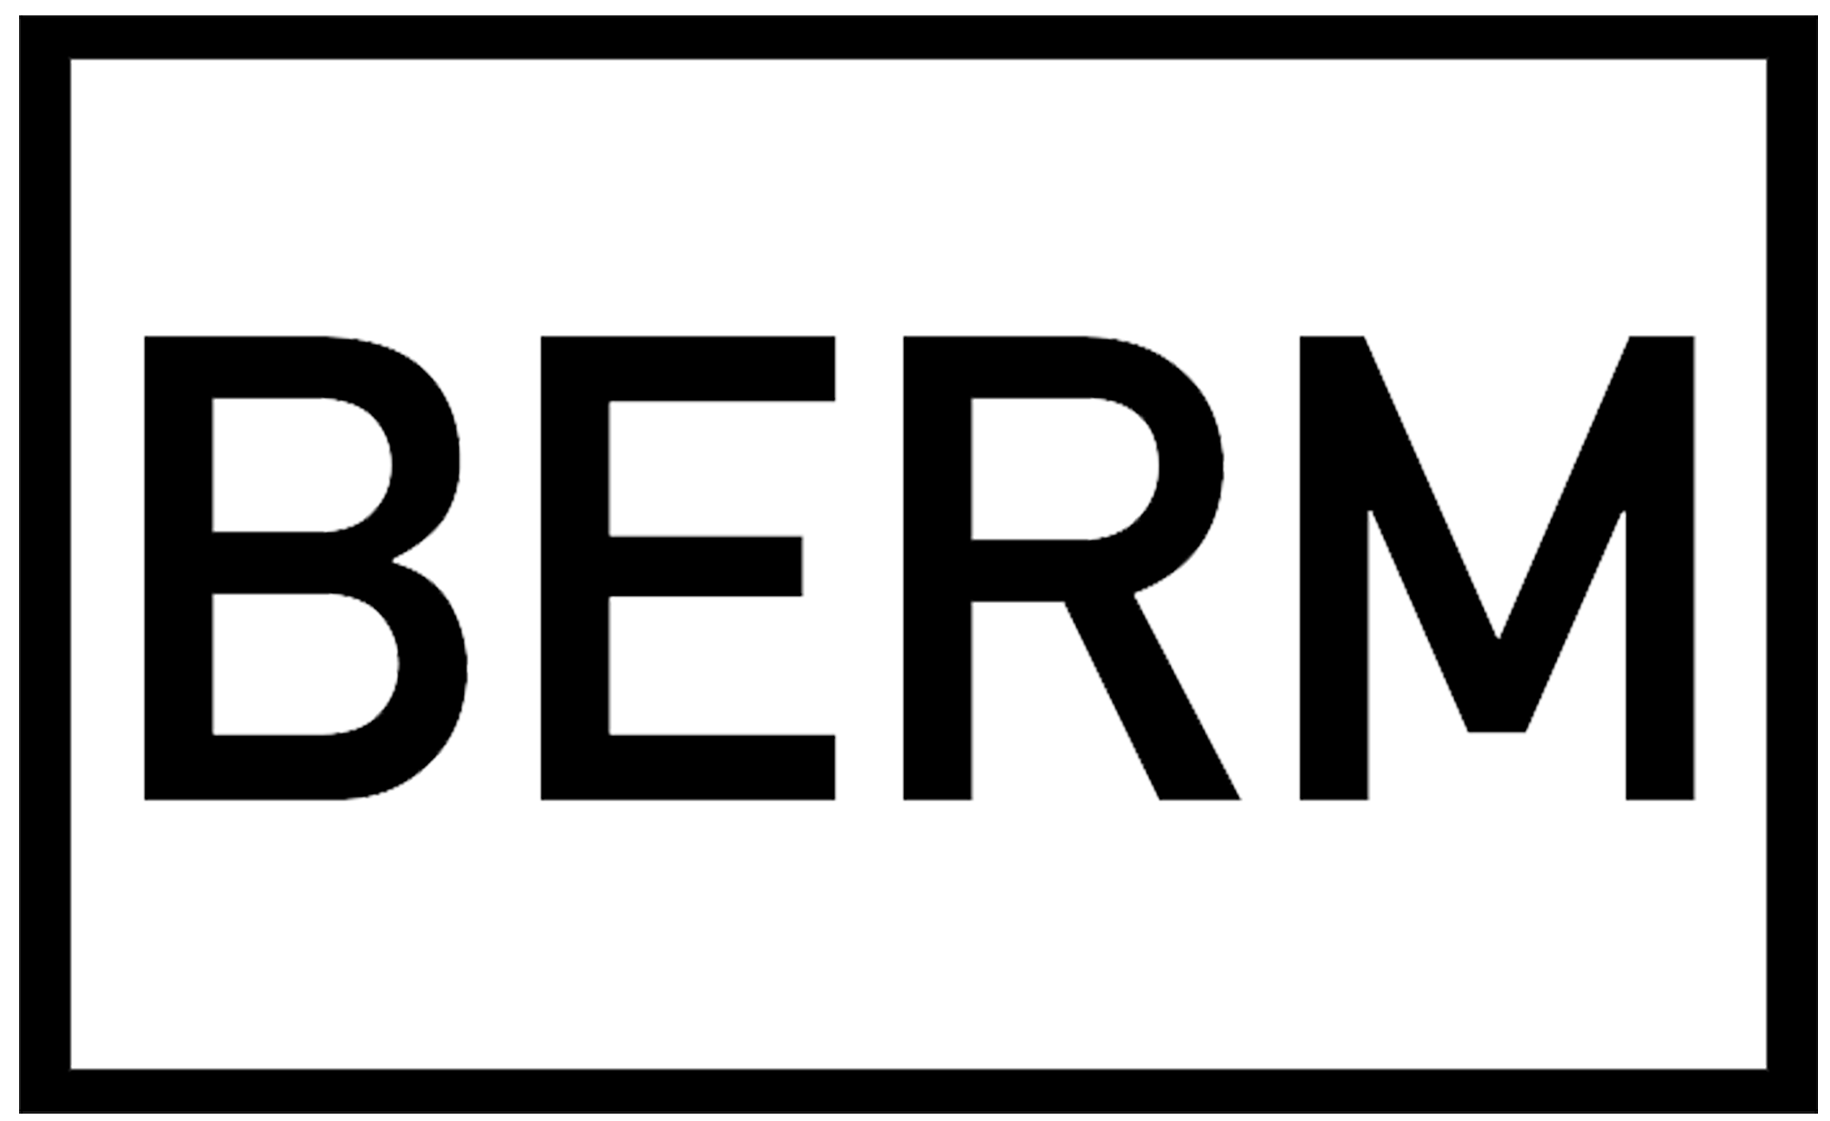 Gabriel Berm